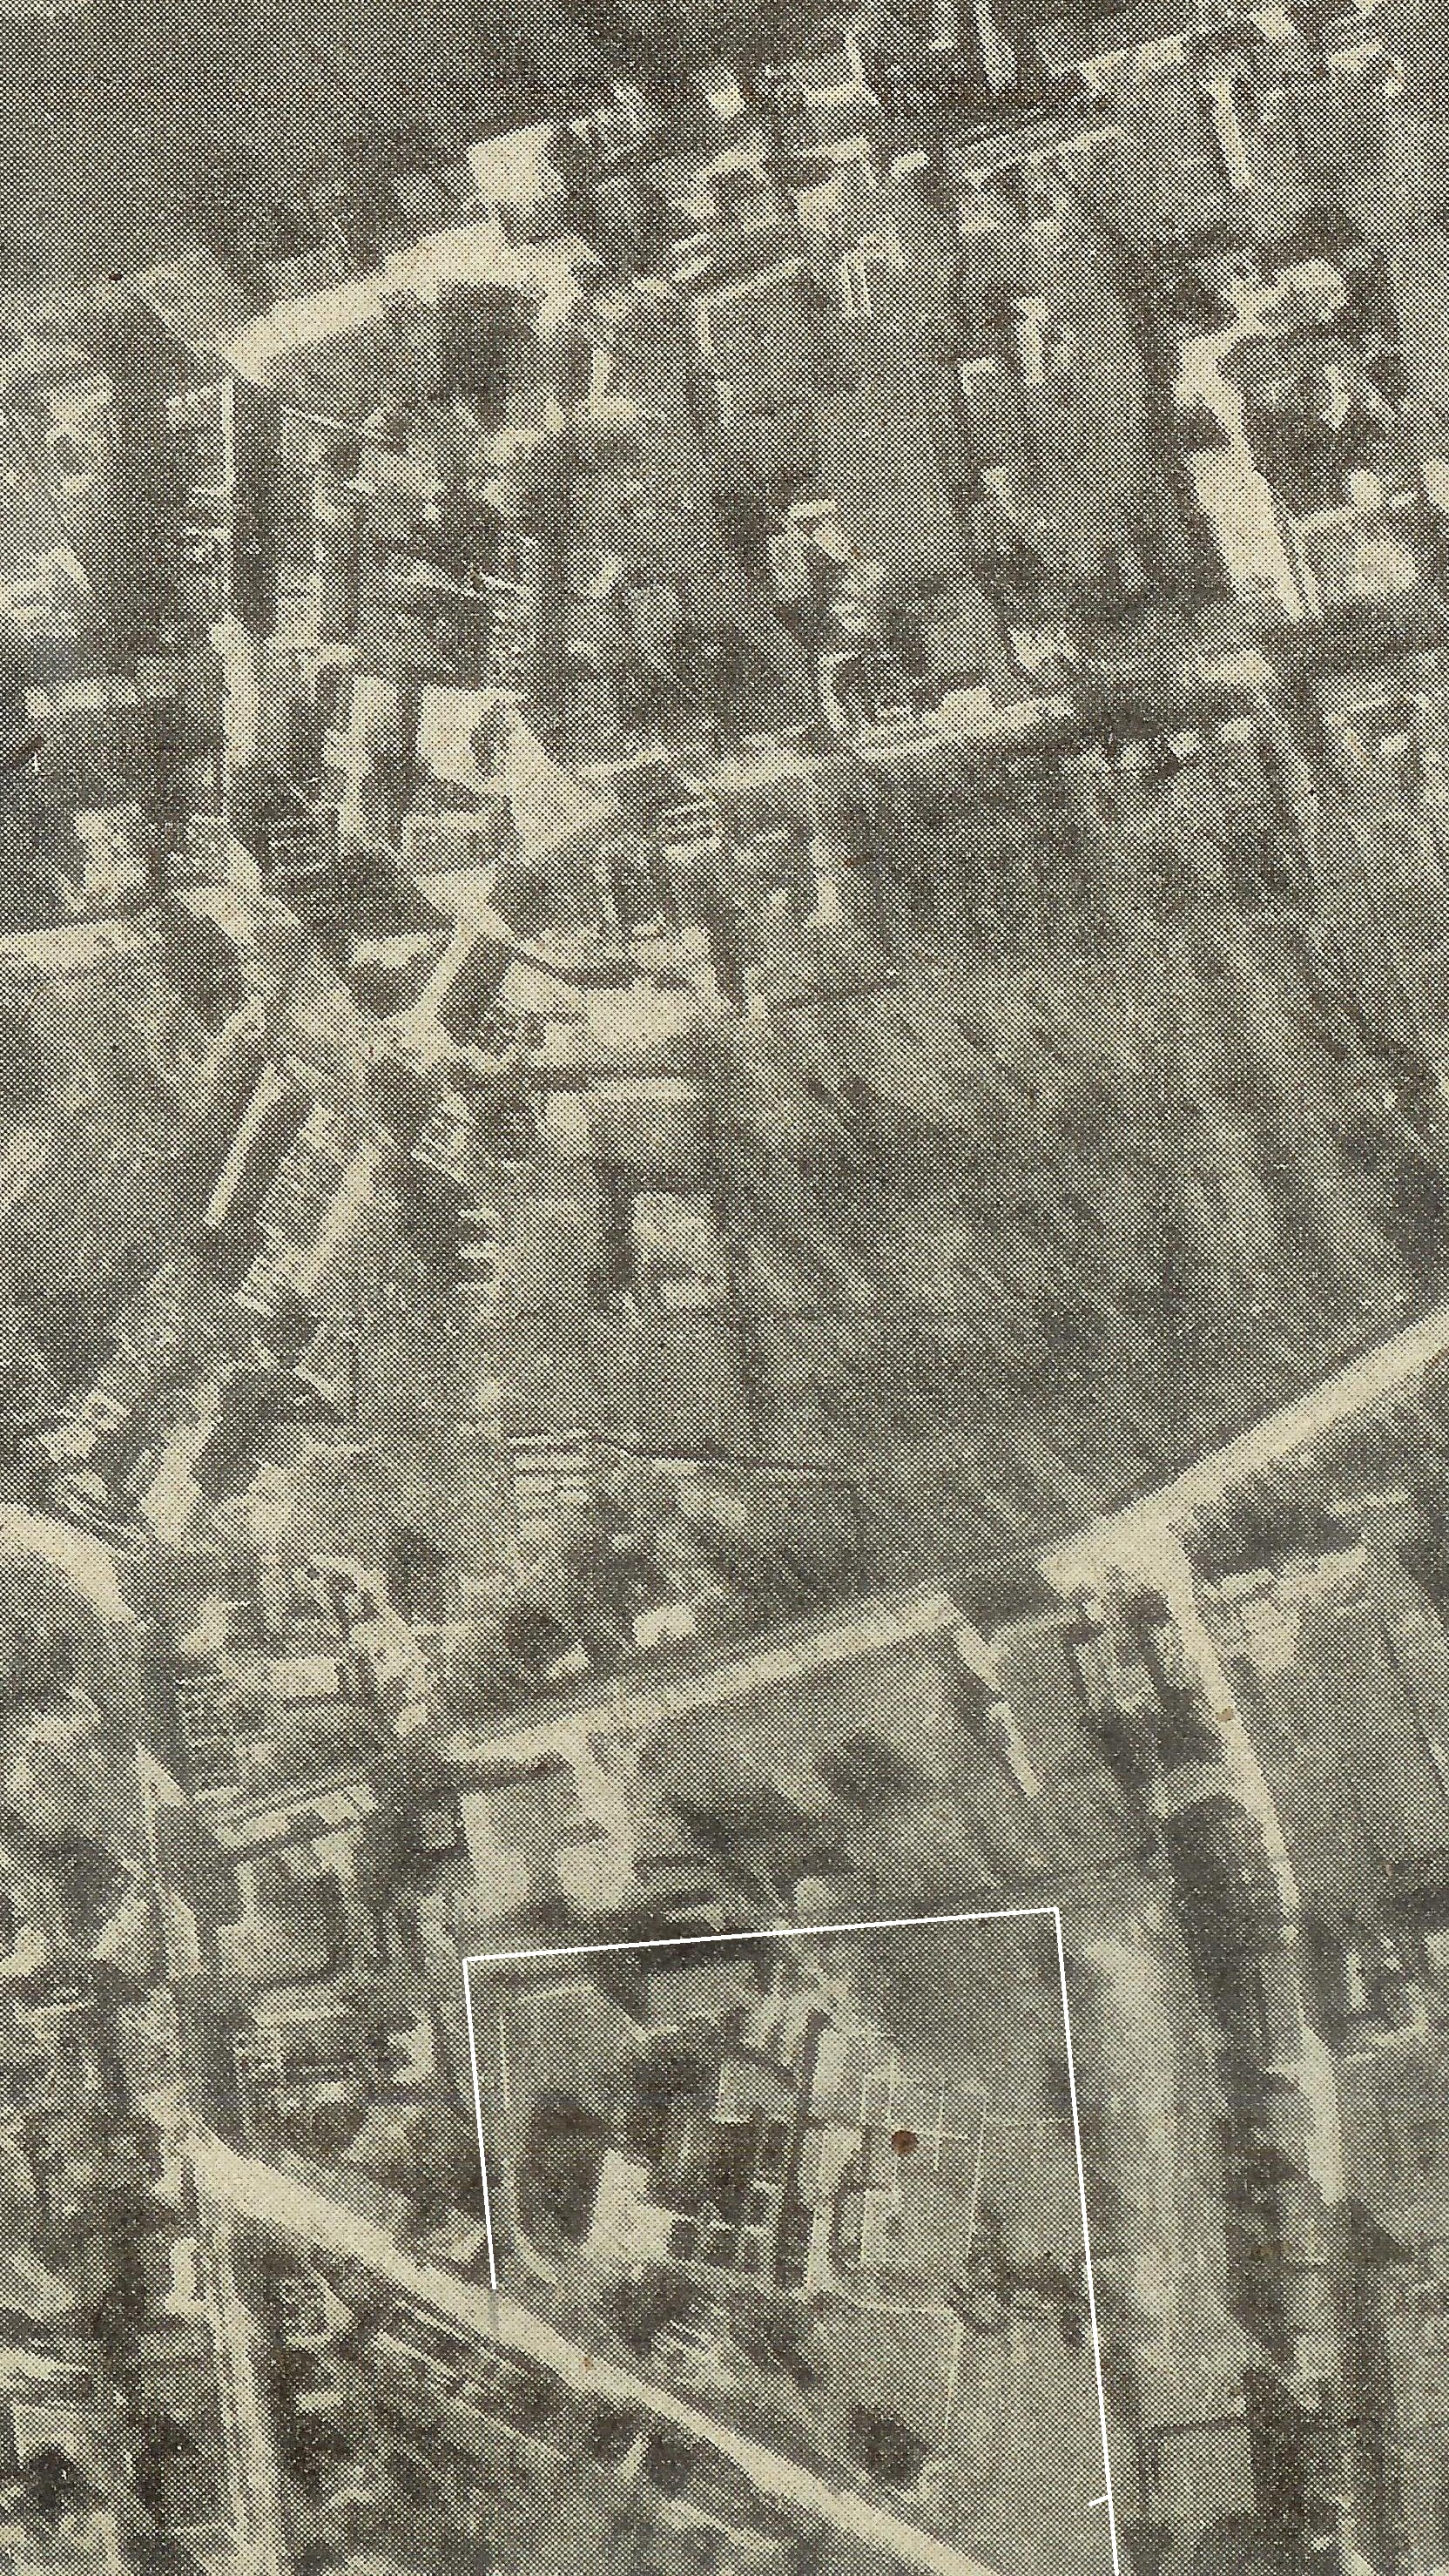 Luftbild ca (nach) 1945